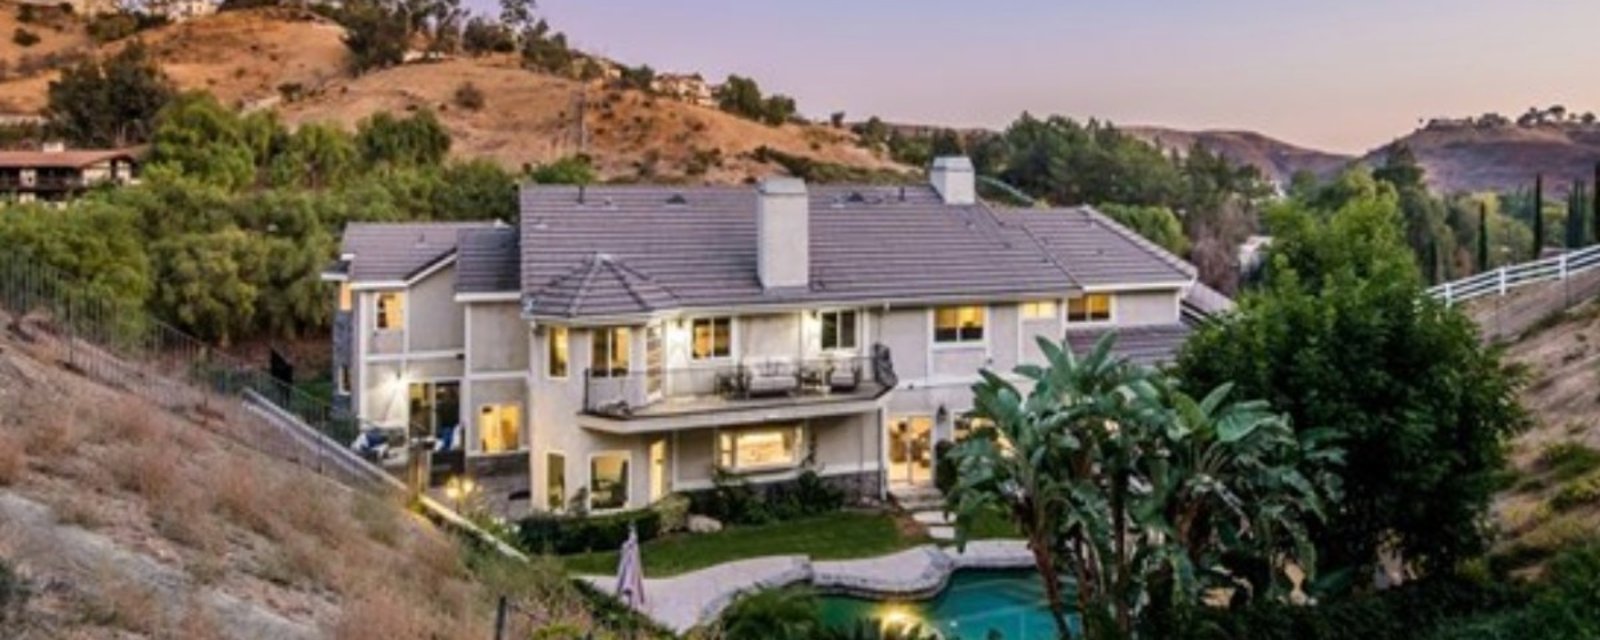 Shaquille O’Neal vend sa magnifique maison de Los Angeles pour 2,5 M$